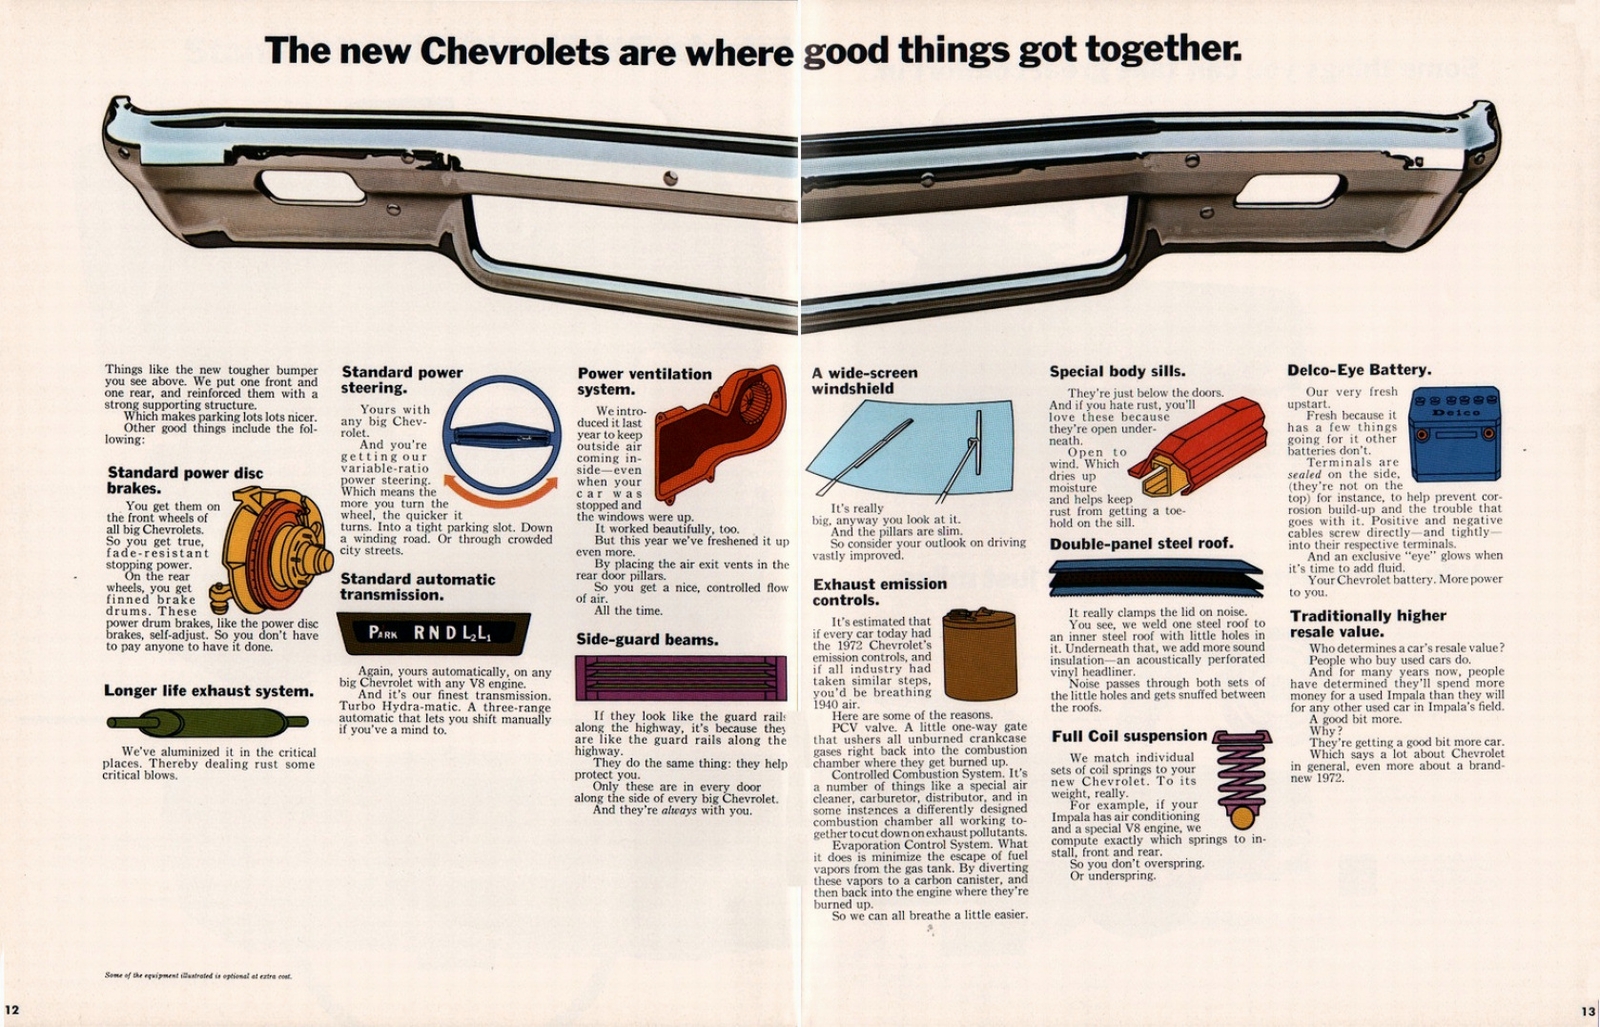 n_1972 Chevrolet Full Size (Cdn)-12-13.jpg